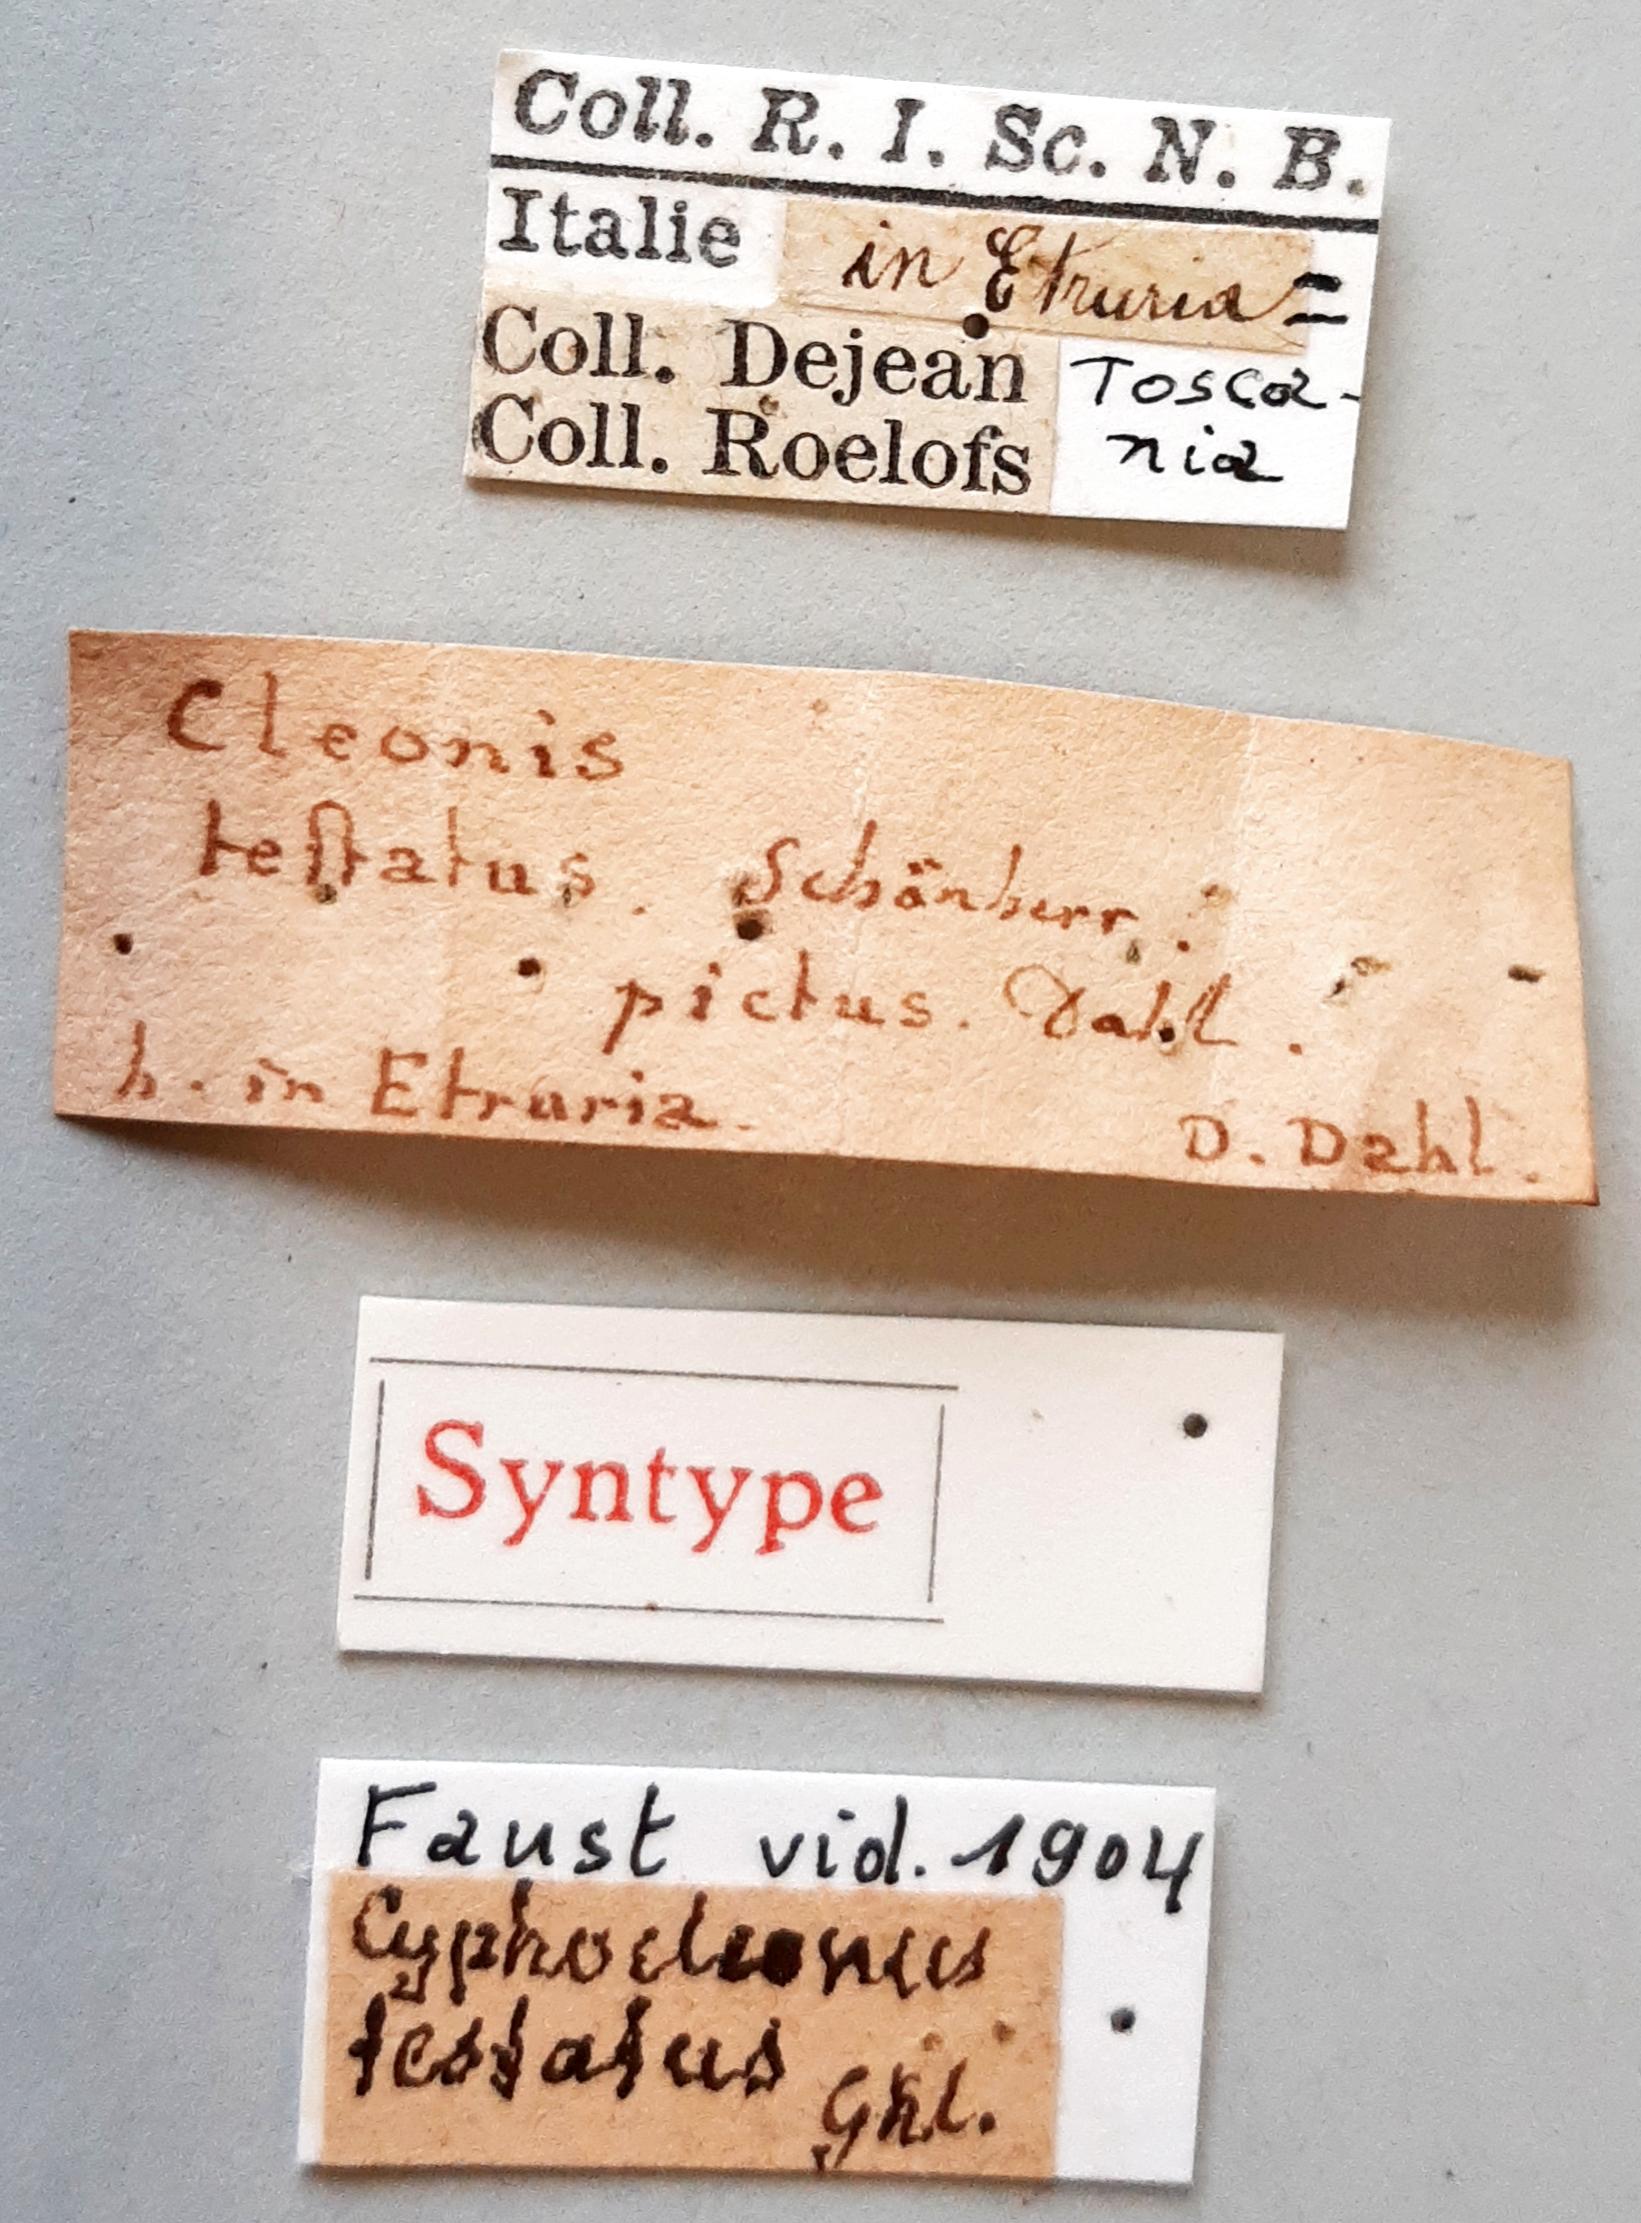 Cleonus testatus st labels